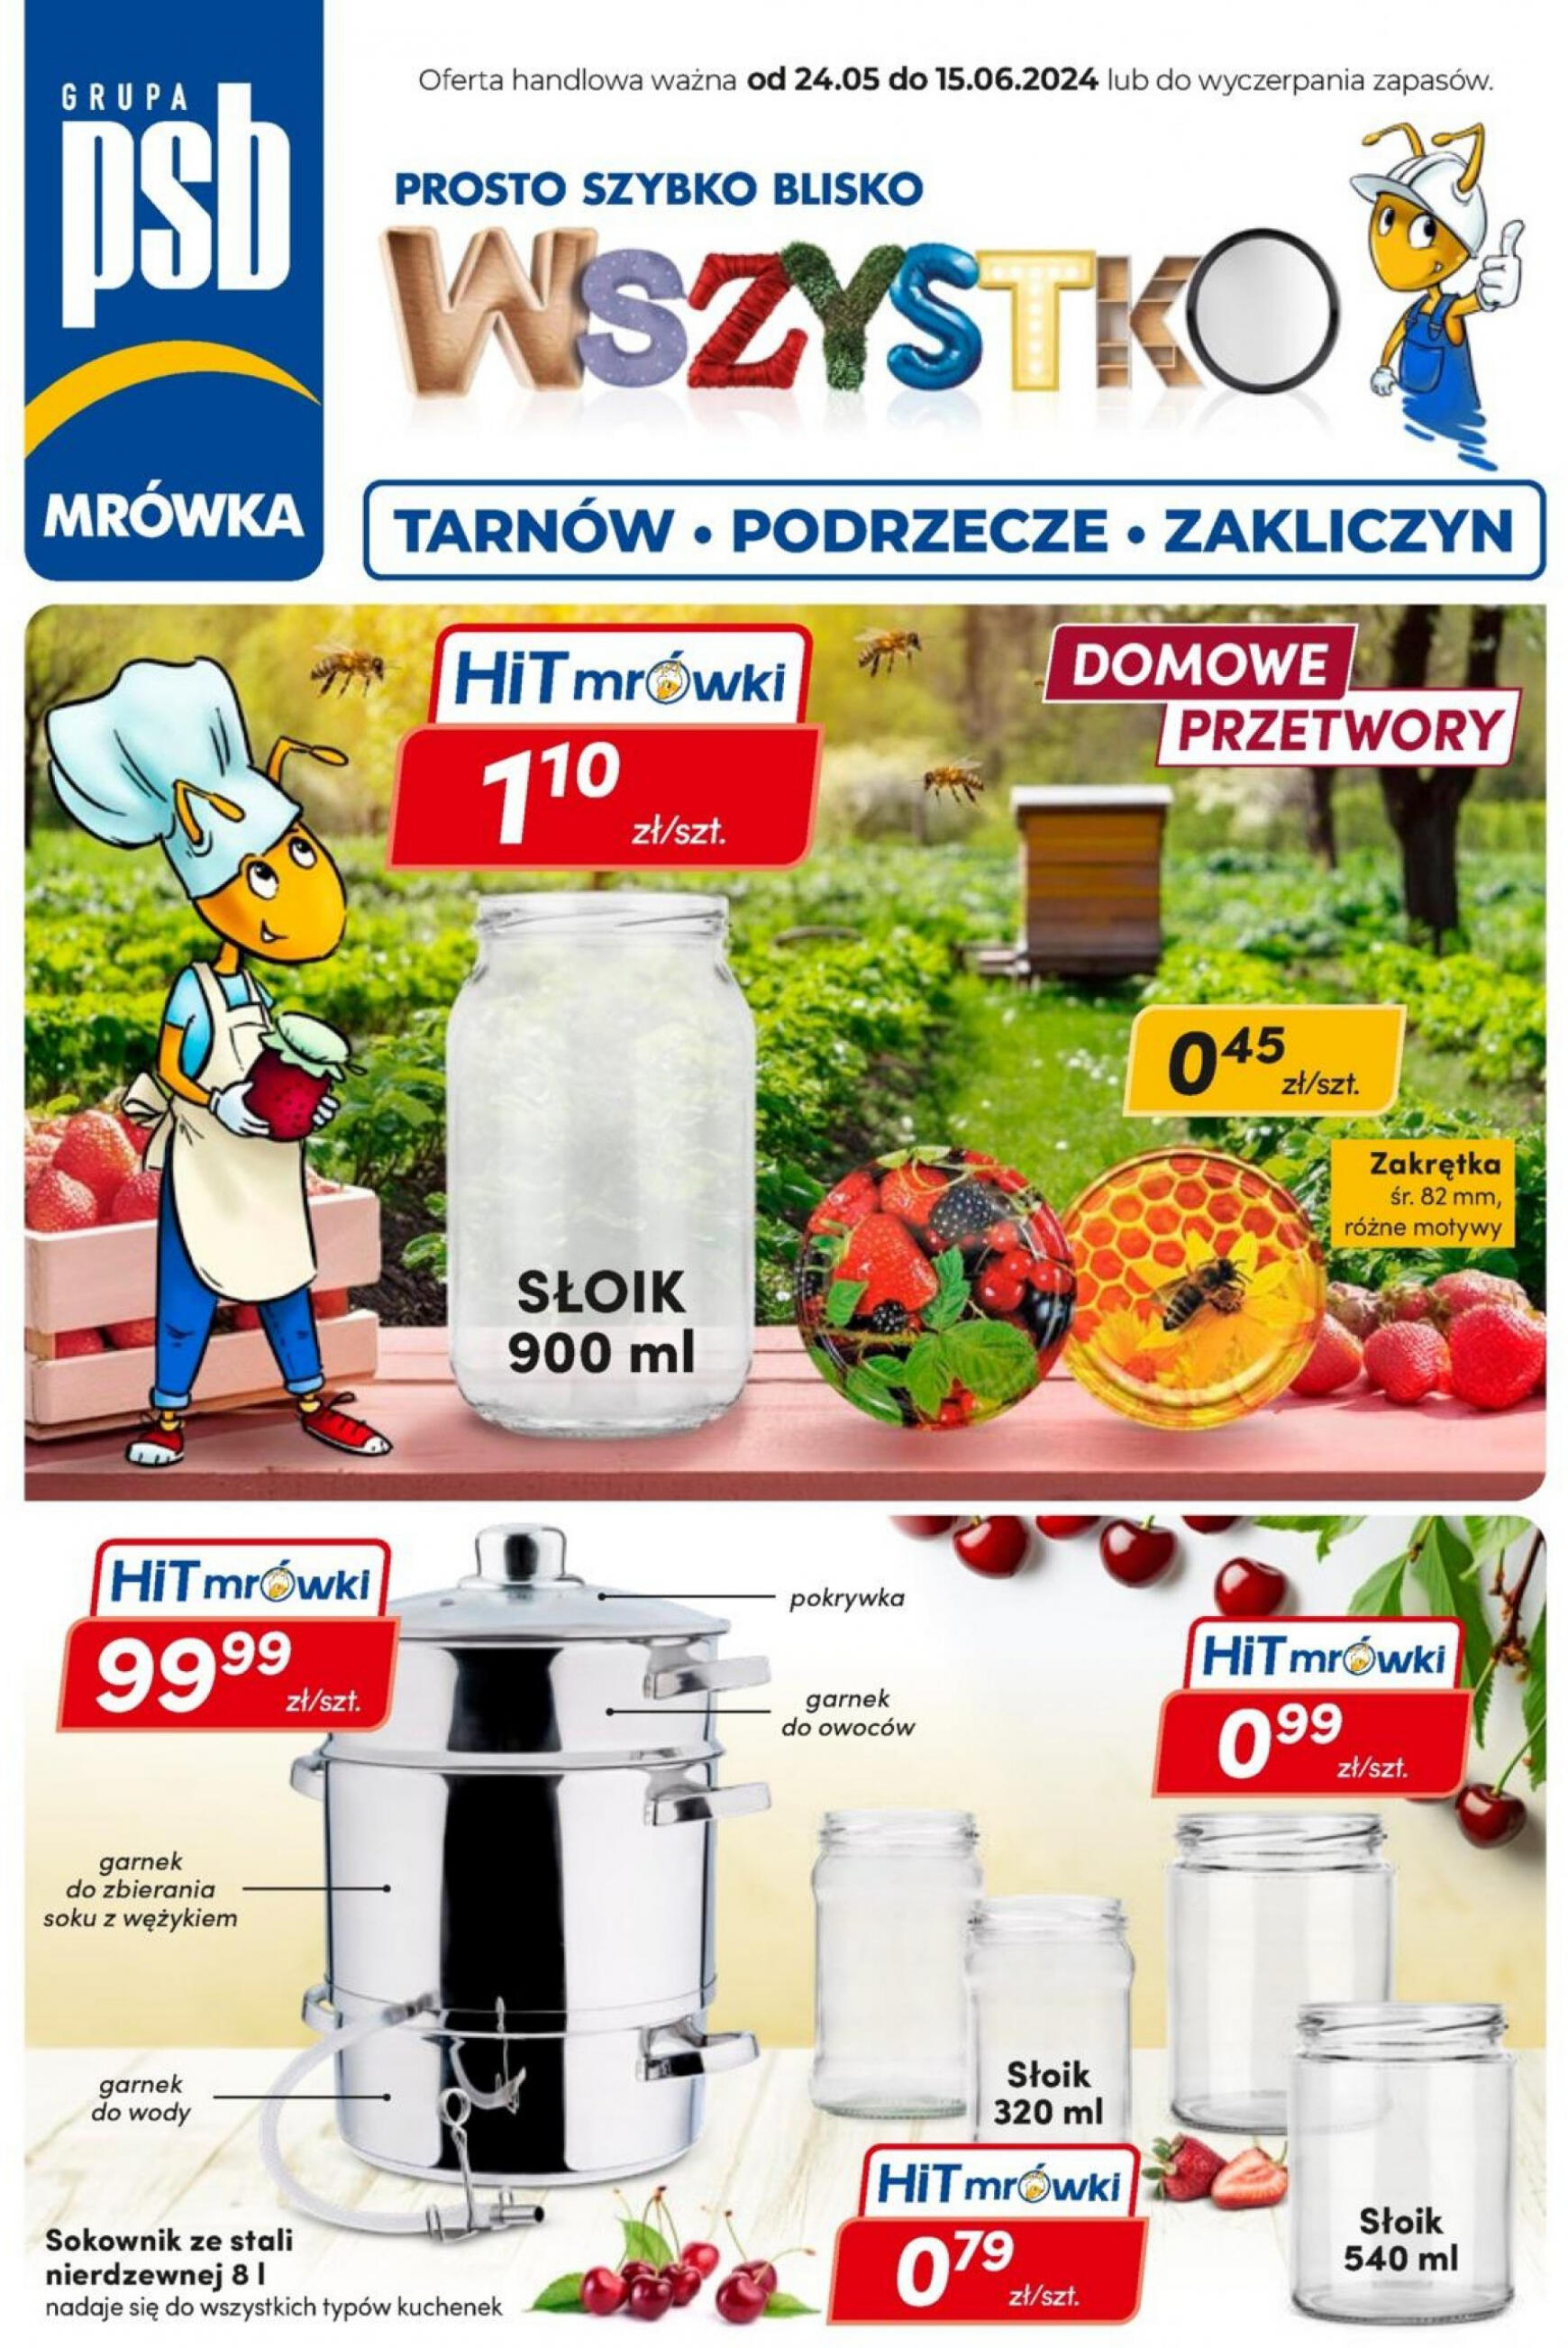 mrowka - Mrówka - Zakliczyn, Tarnow, Podrzecze gazetka aktualna ważna od 24.05. - 15.06.